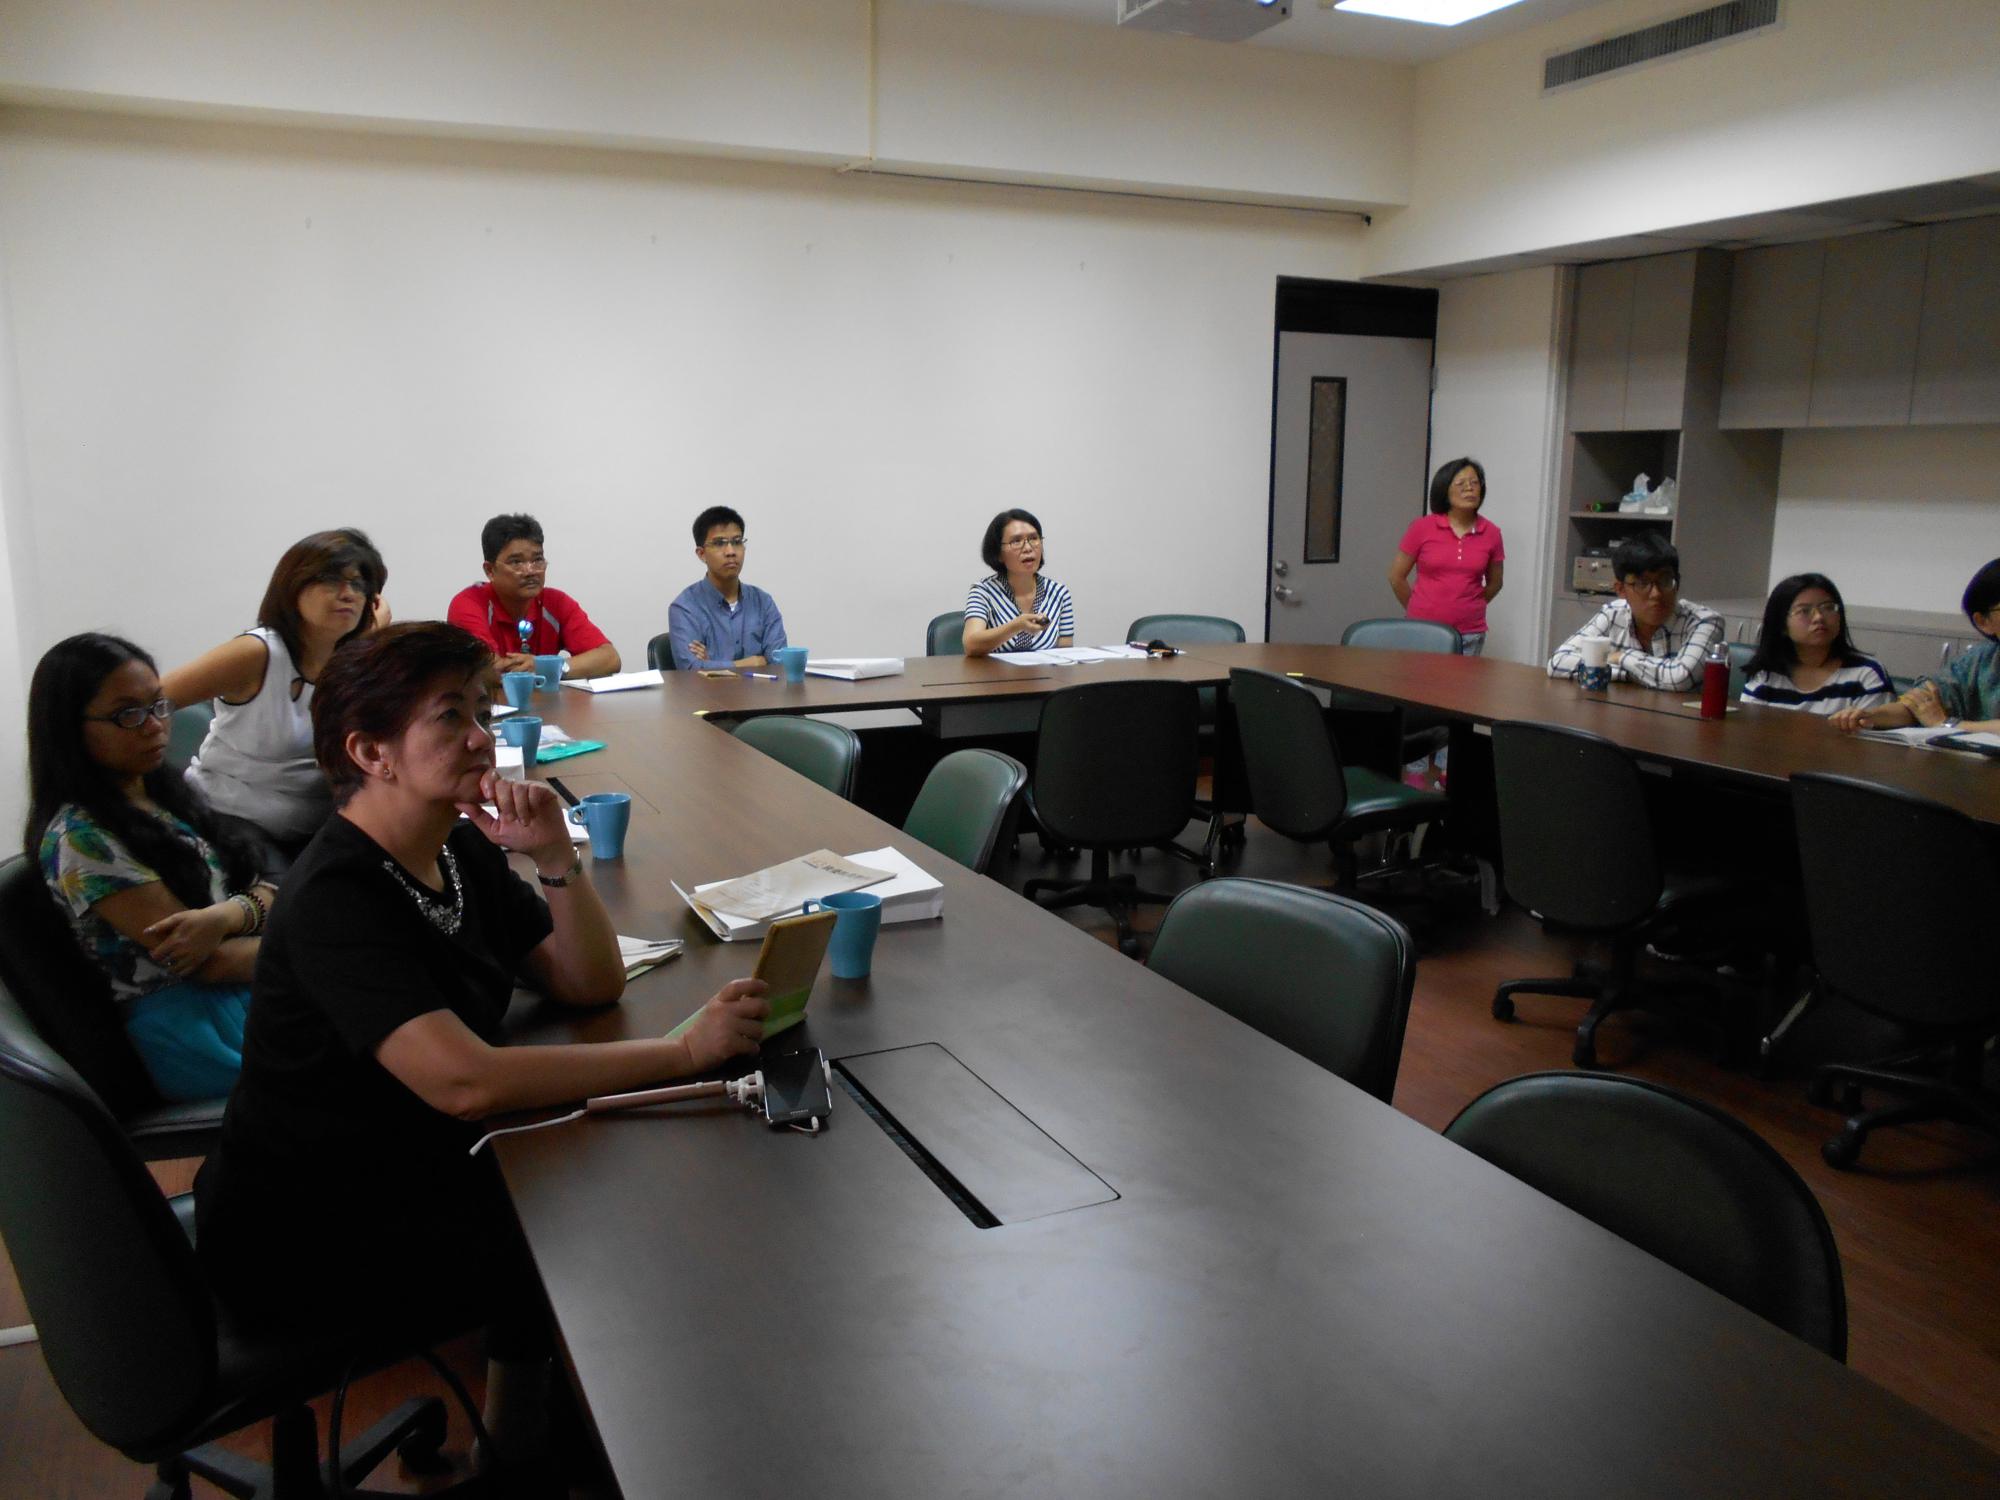 菲律賓大學教育學院Myra Tantengco教授帶領一行7人蒞臨本中心參訪活動照片